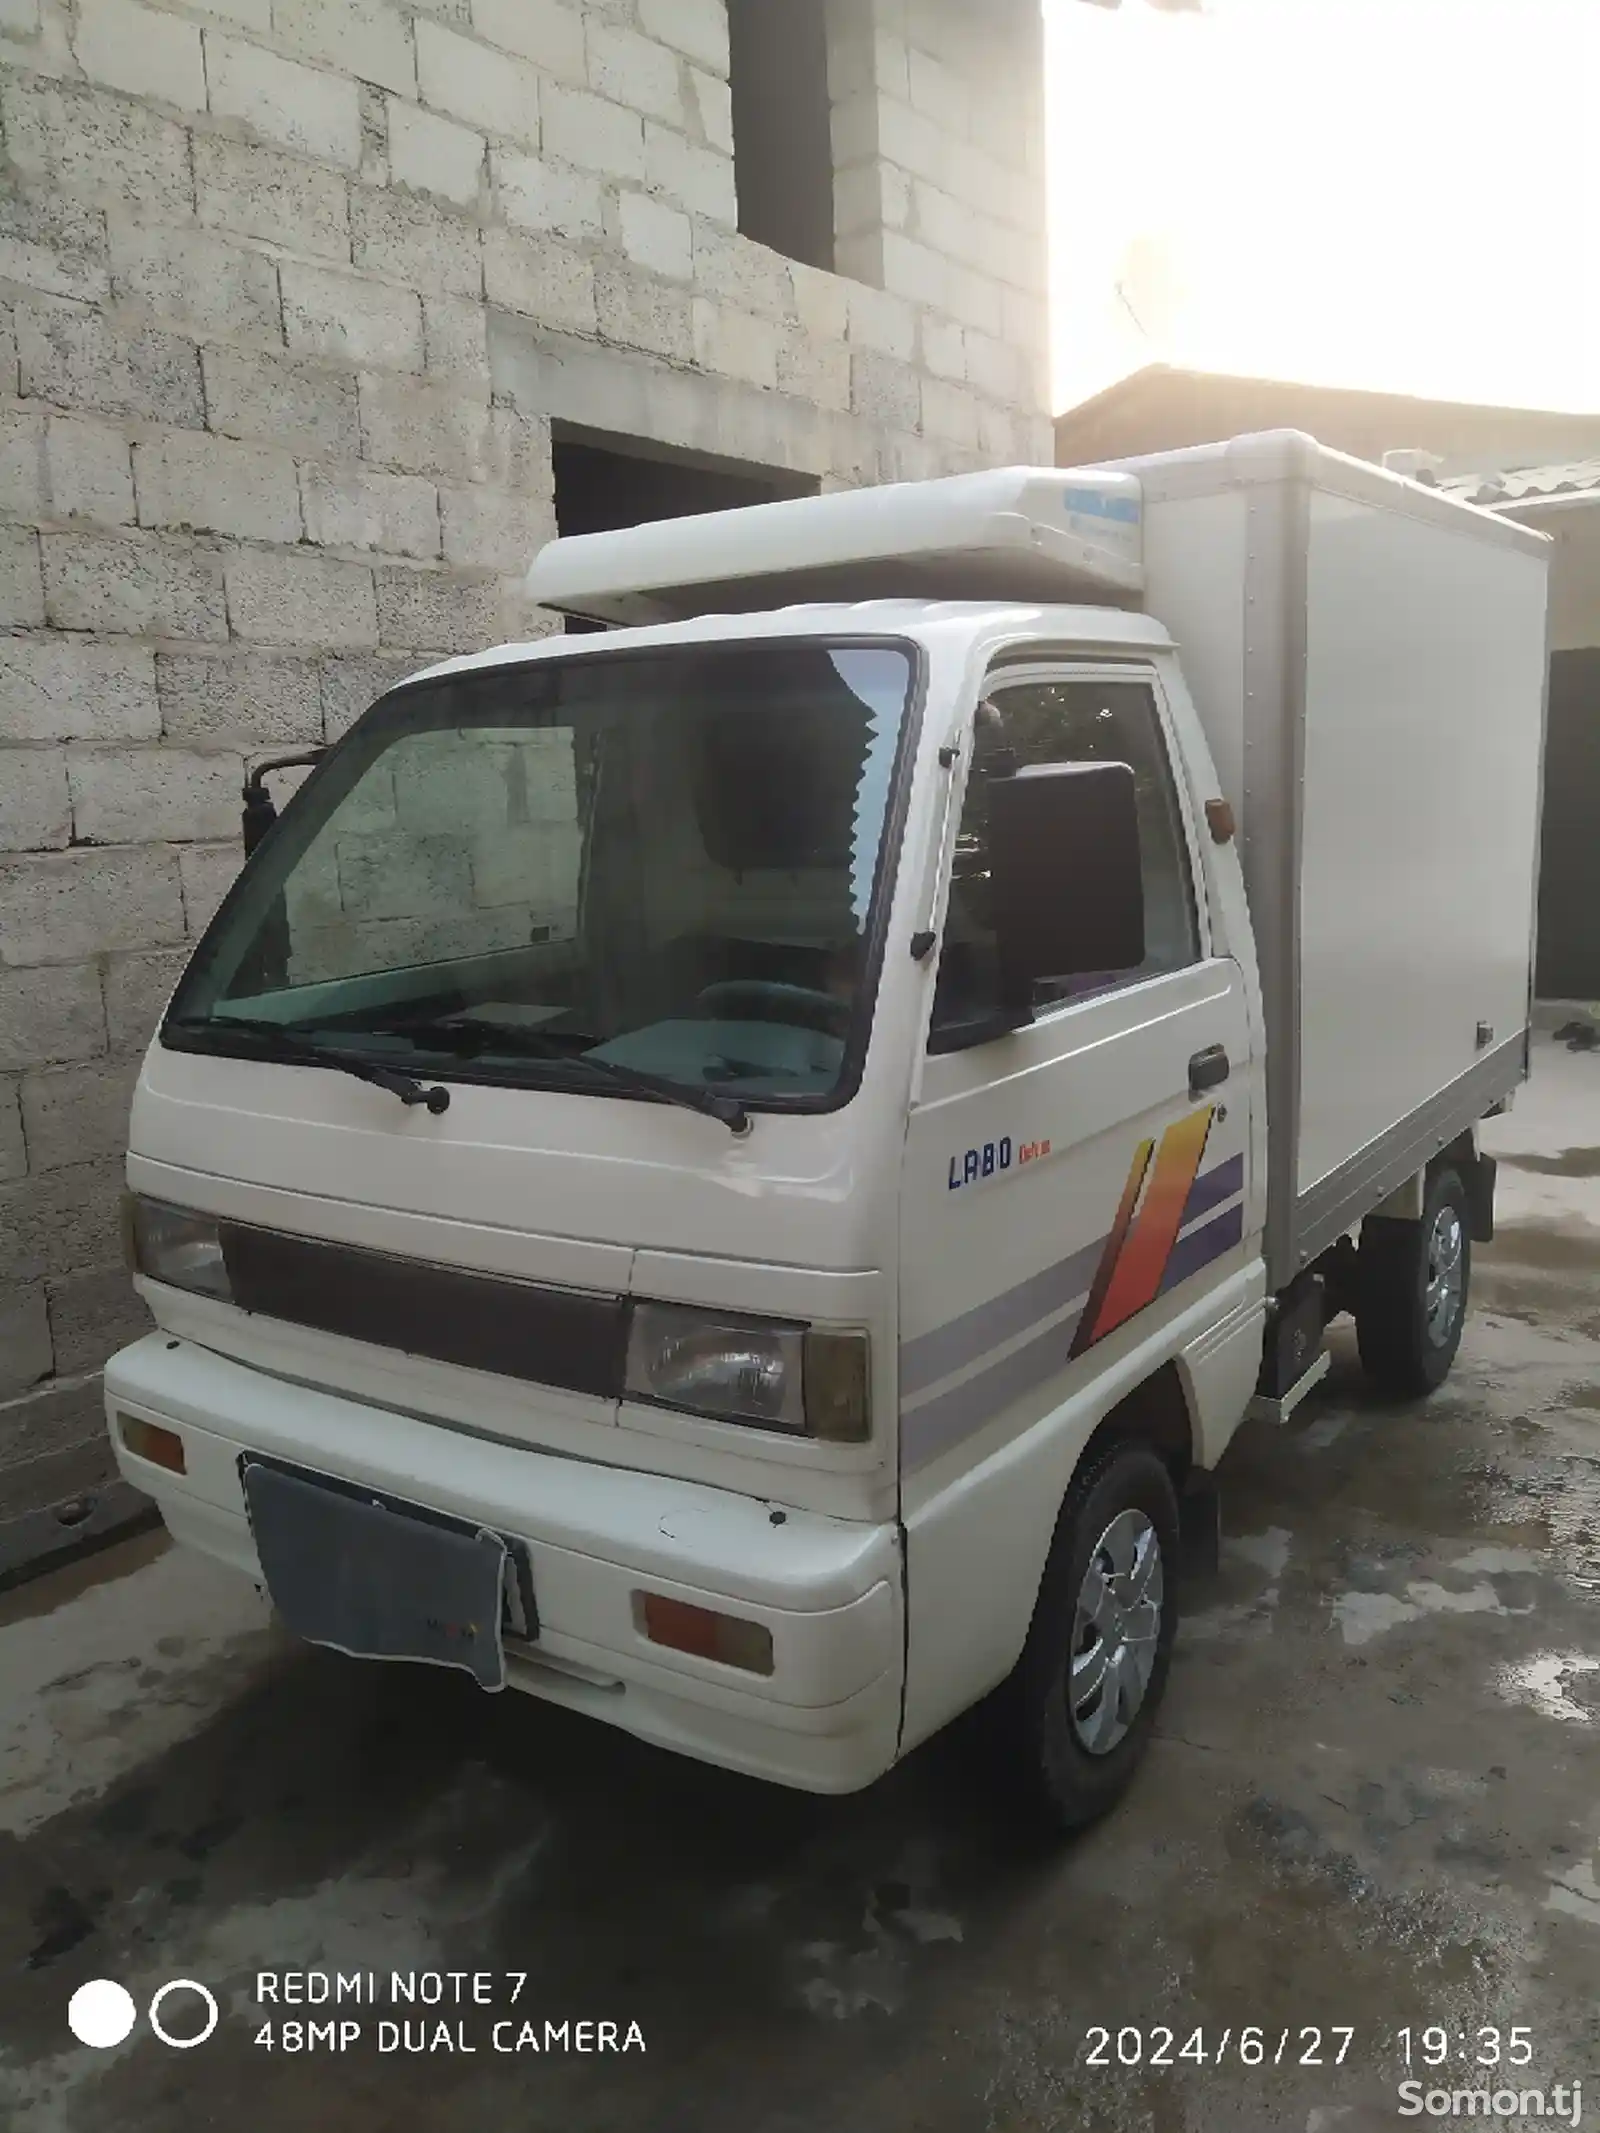 Фургон Daewoo Labo, 1999-2